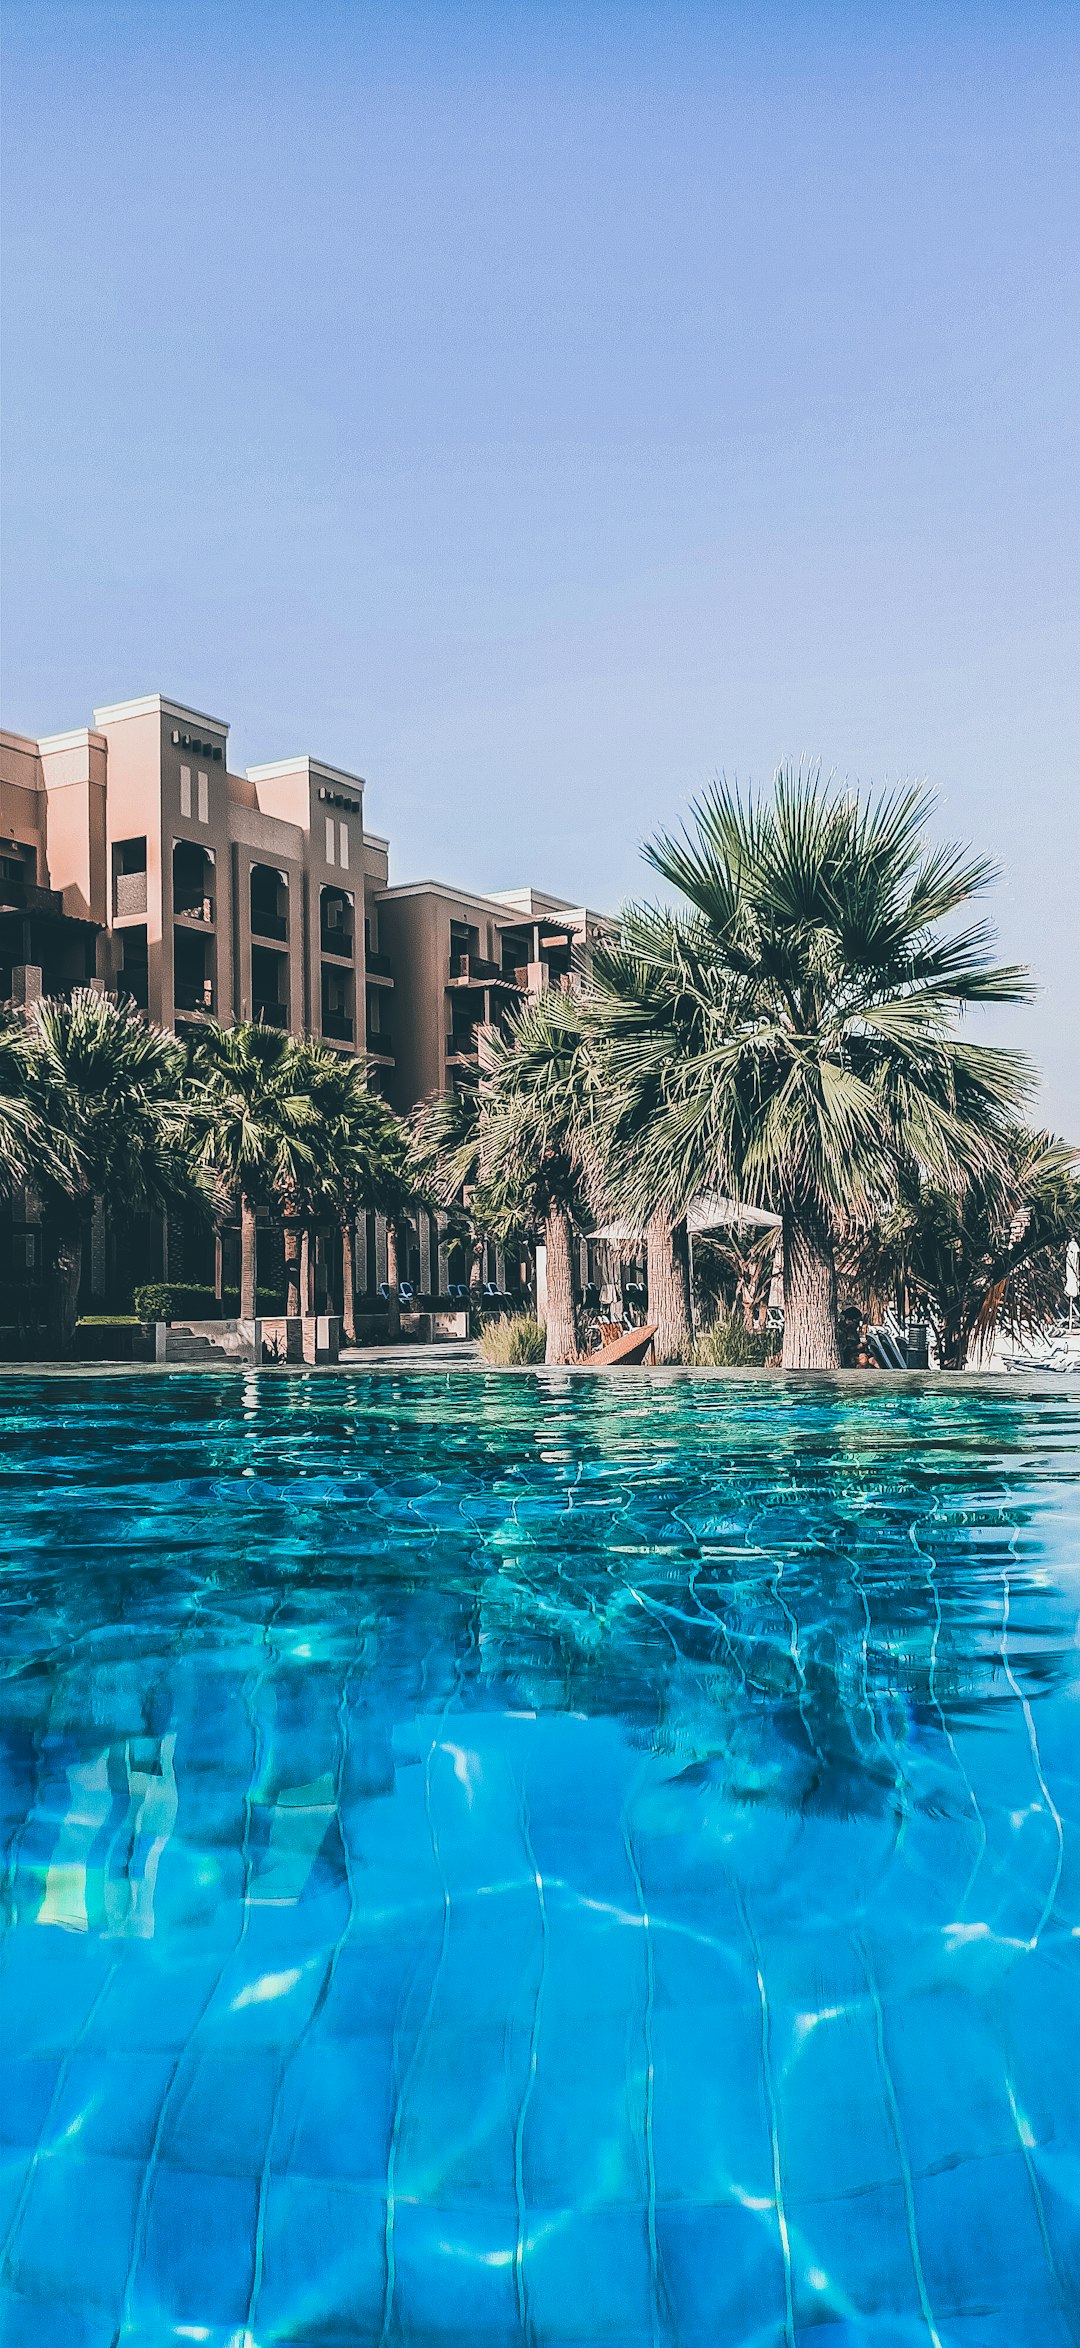 Resort photo spot Ras Al-Khaimah - Ras al Khaimah - United Arab Emirates Burj Park